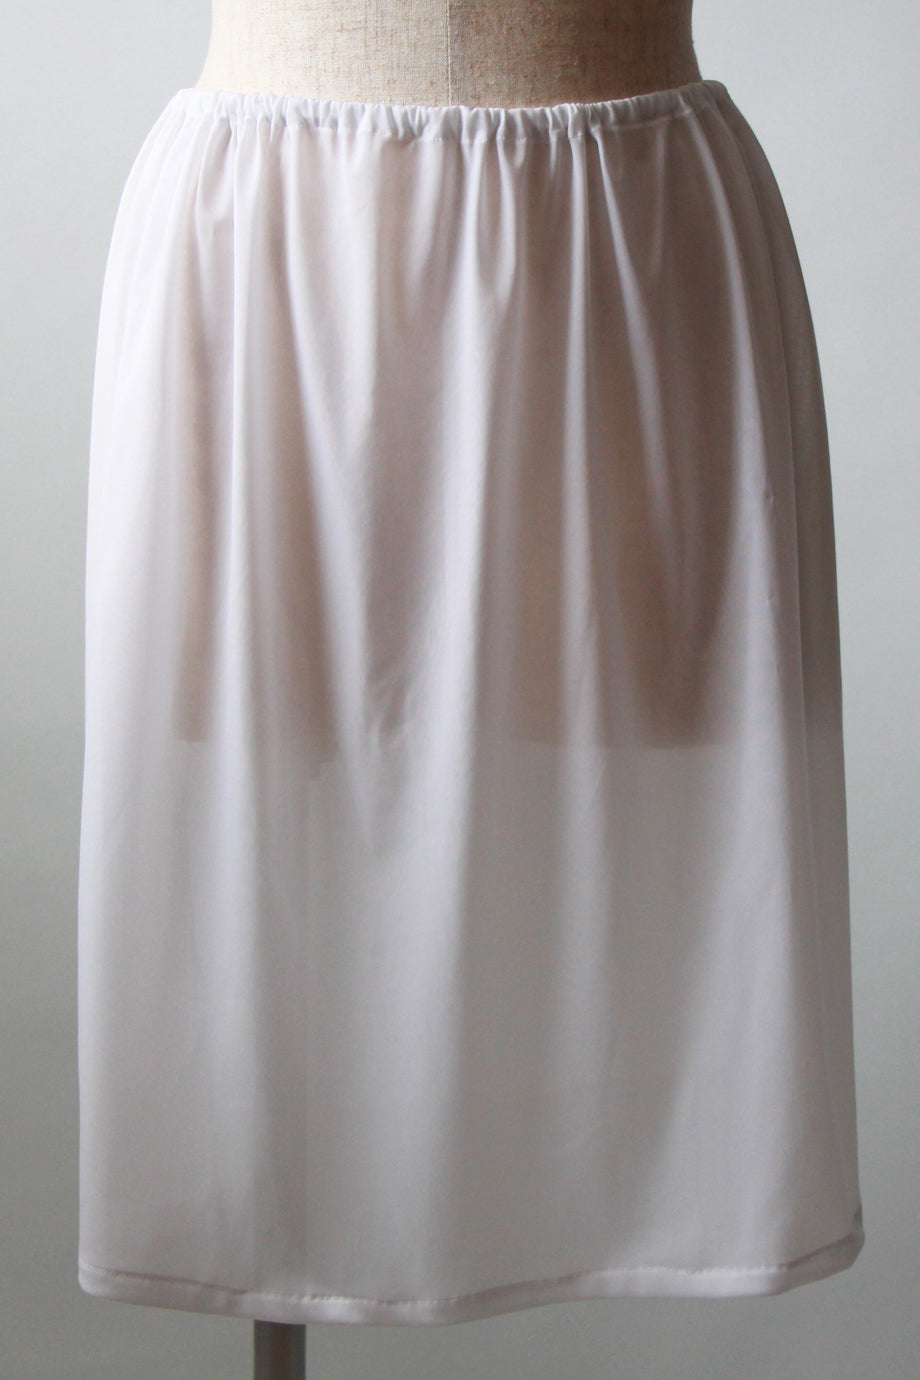 [575] Petticoat slip dress